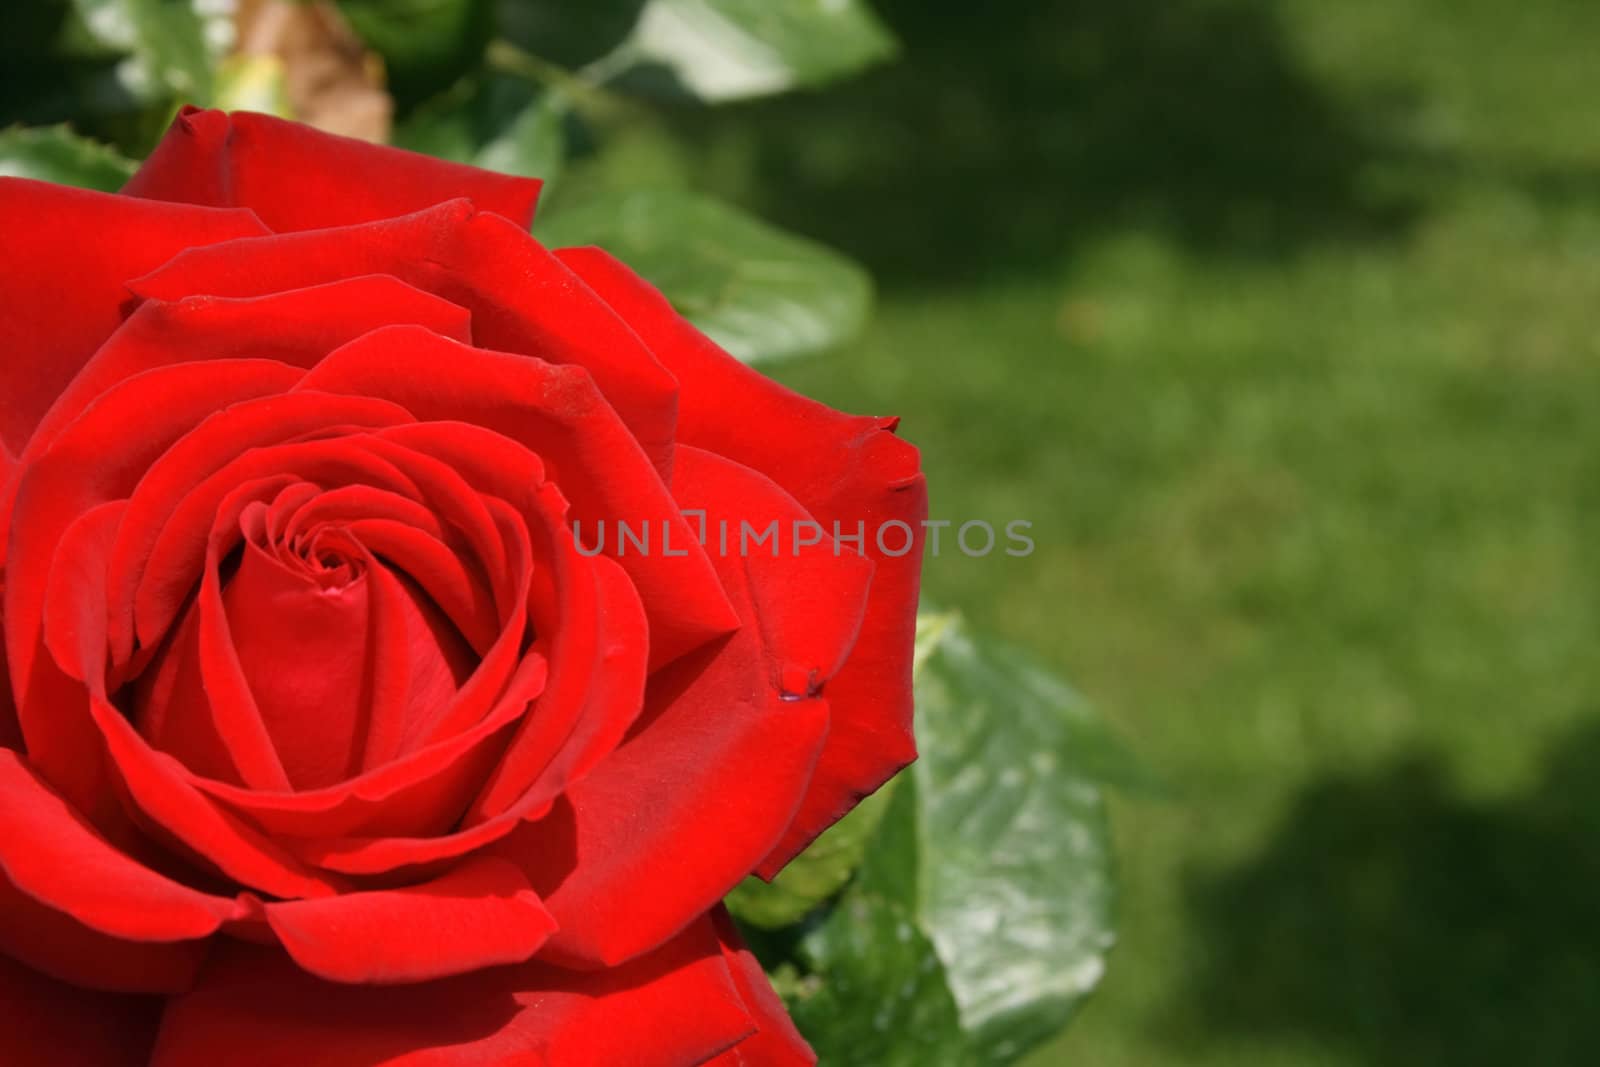 rose background by jonnysek